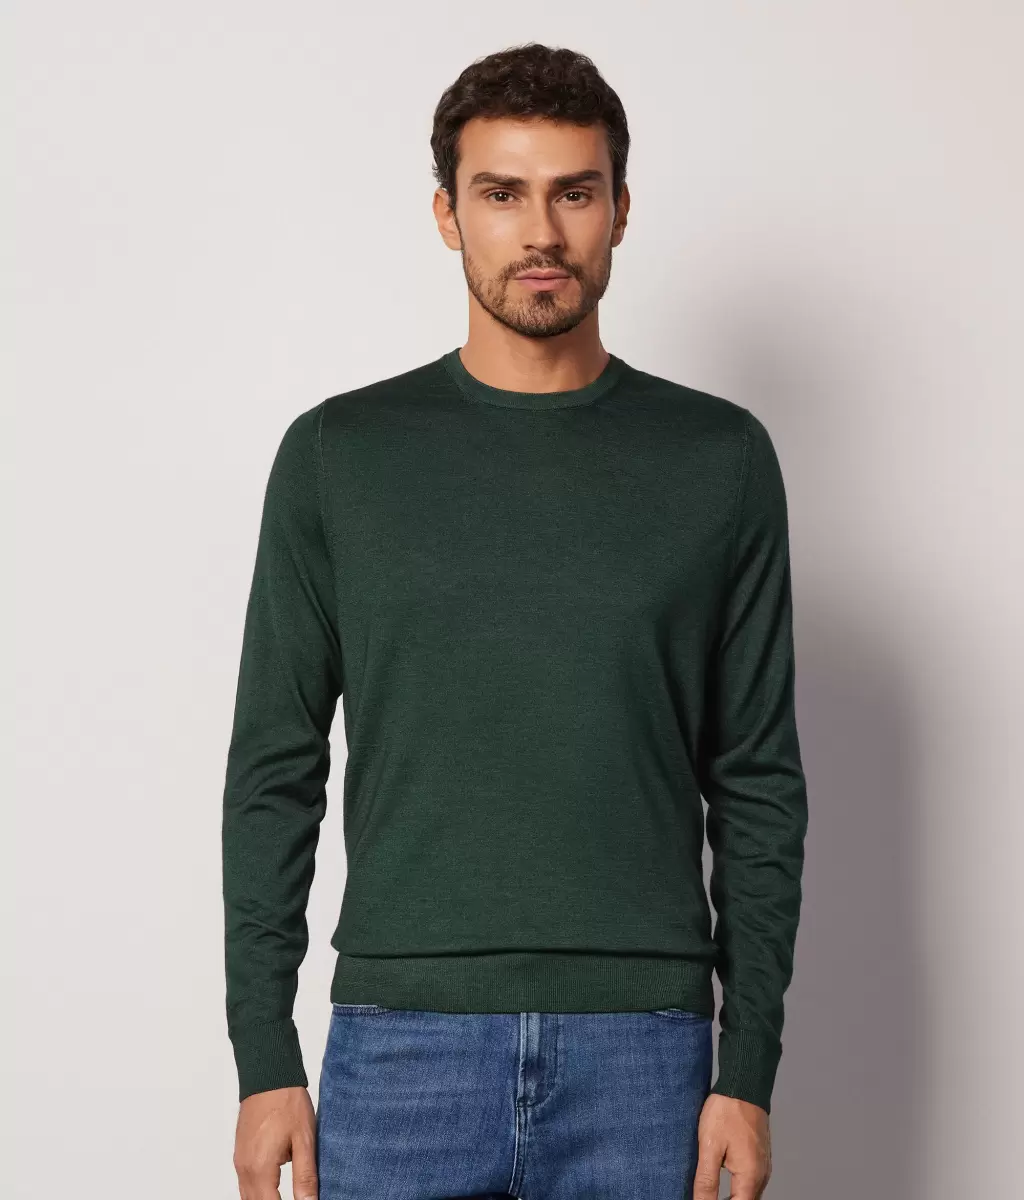 Falconeri Swetry Z Okrągłym Dekoltem Mężczyzna Dark_Green Pulower Z Kaszmiru Ultrafine - 1